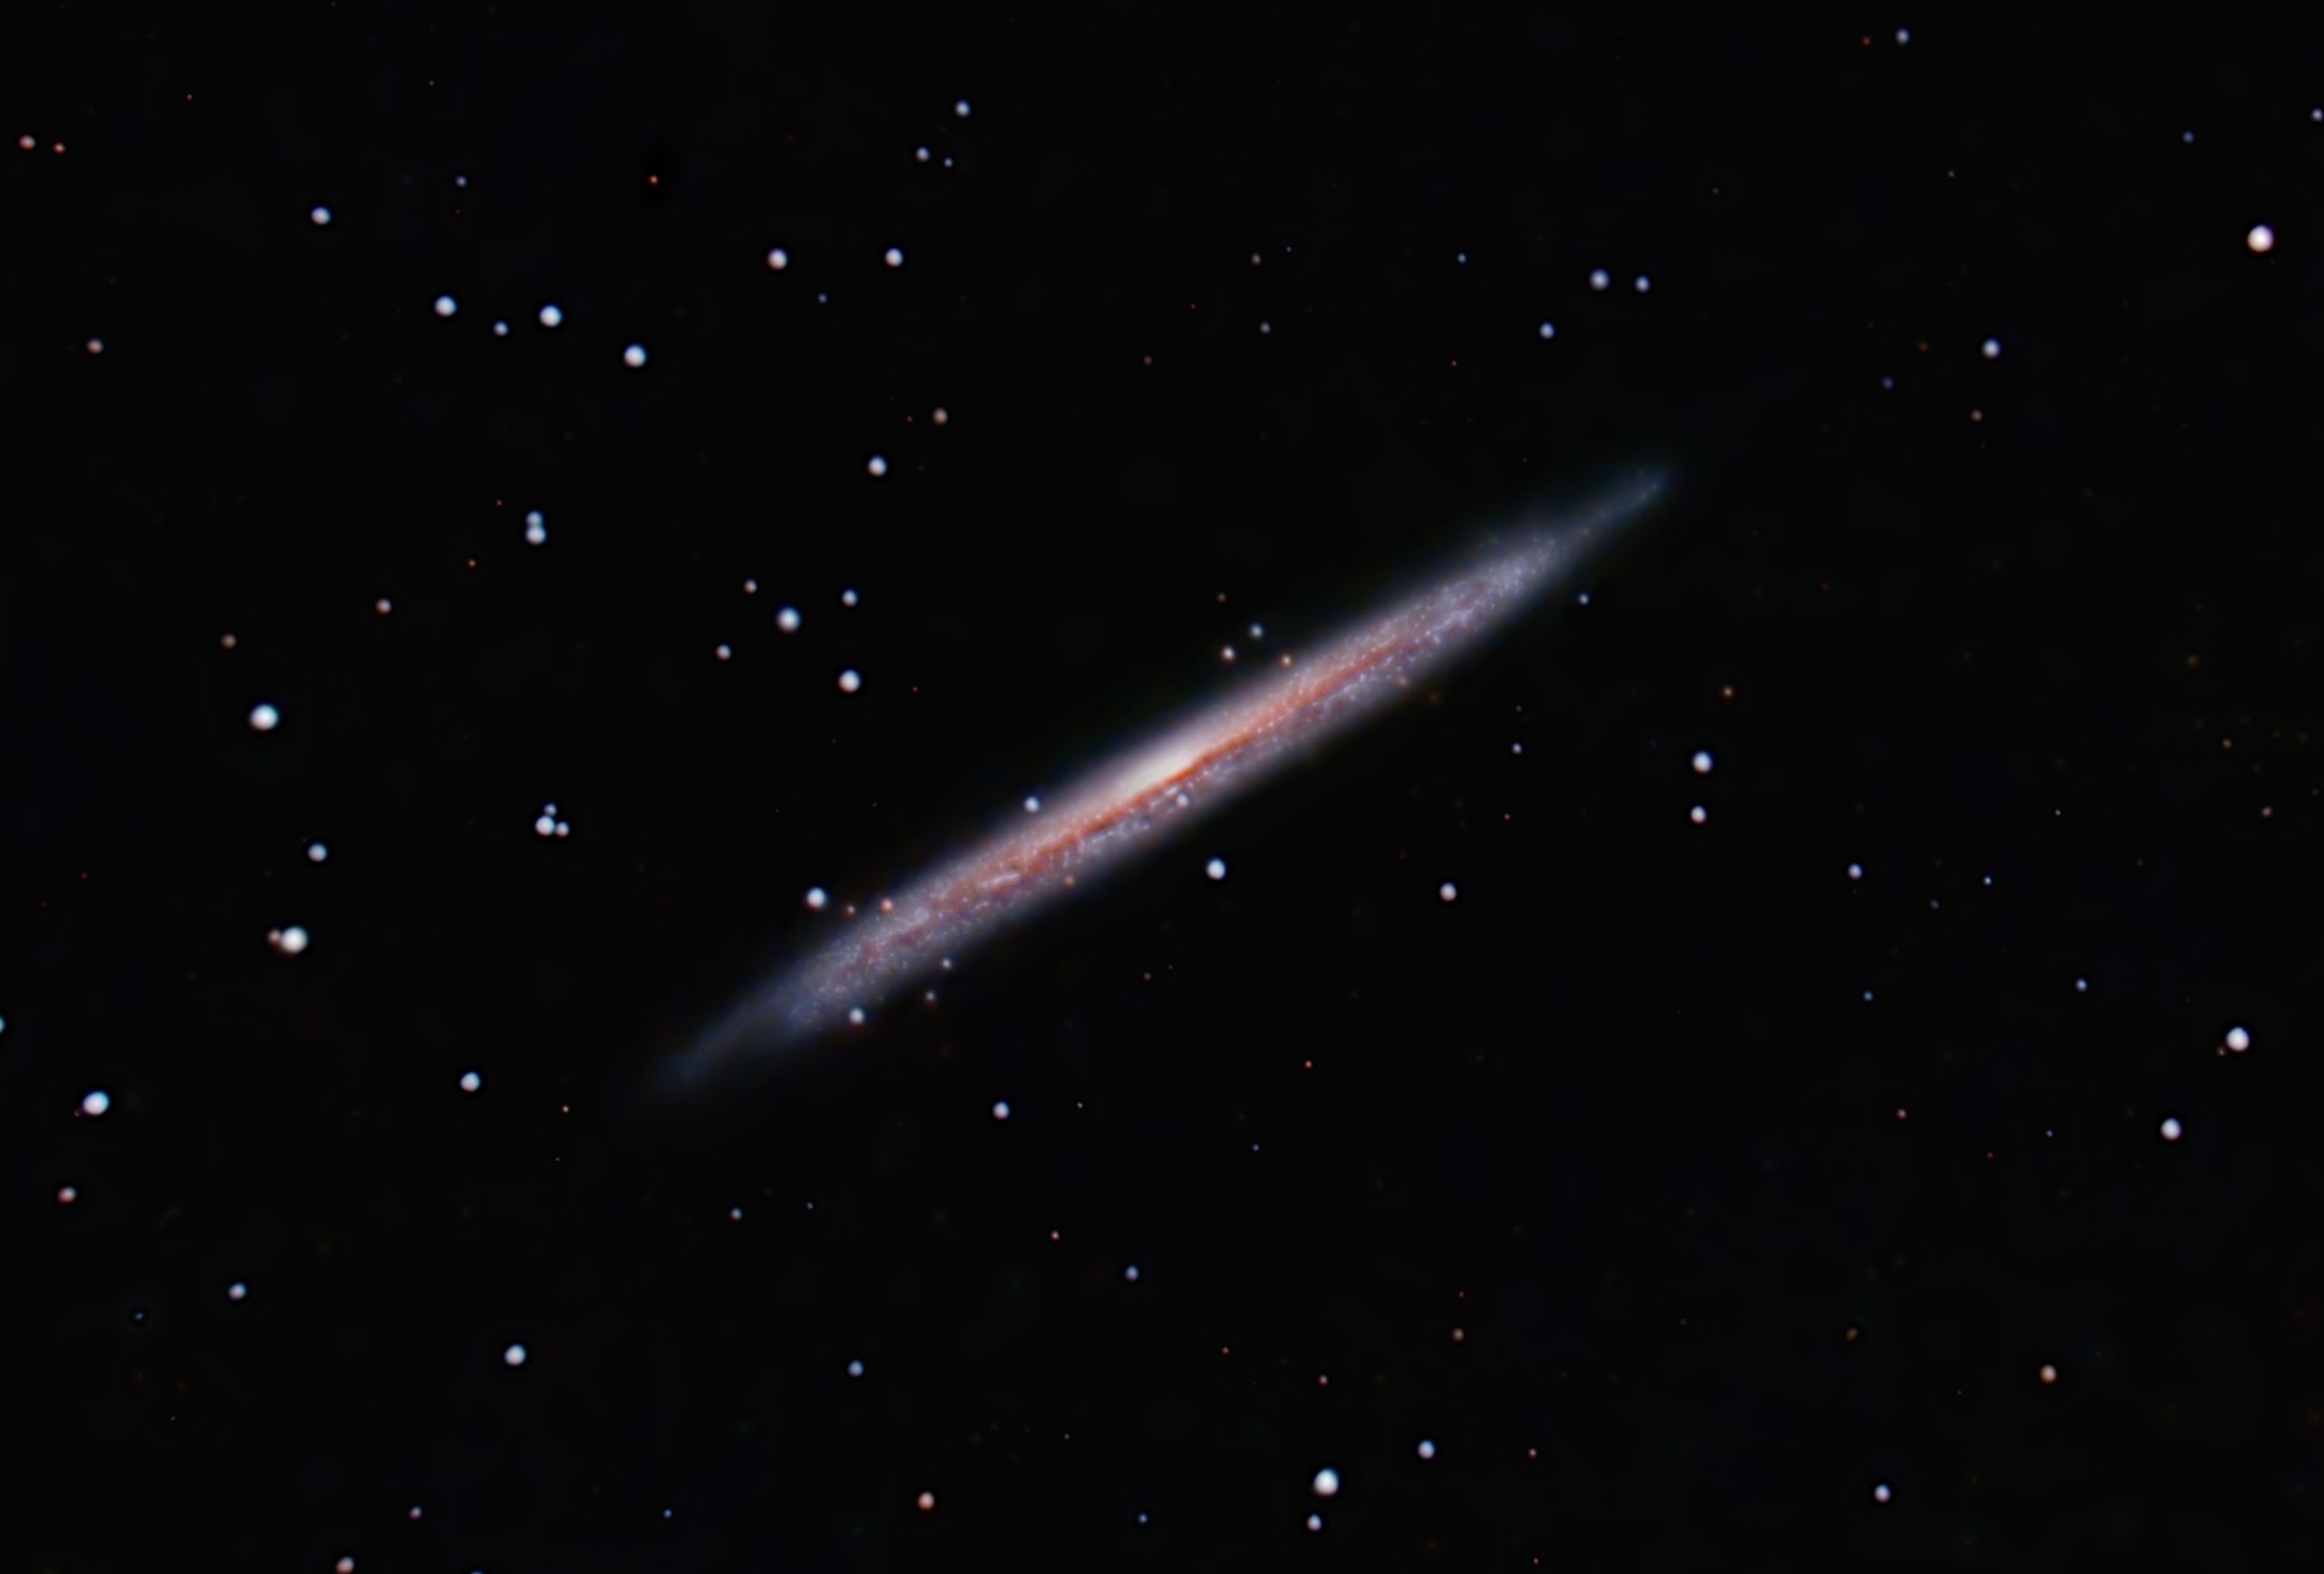 Galaxia+astilla+(NGC5907)